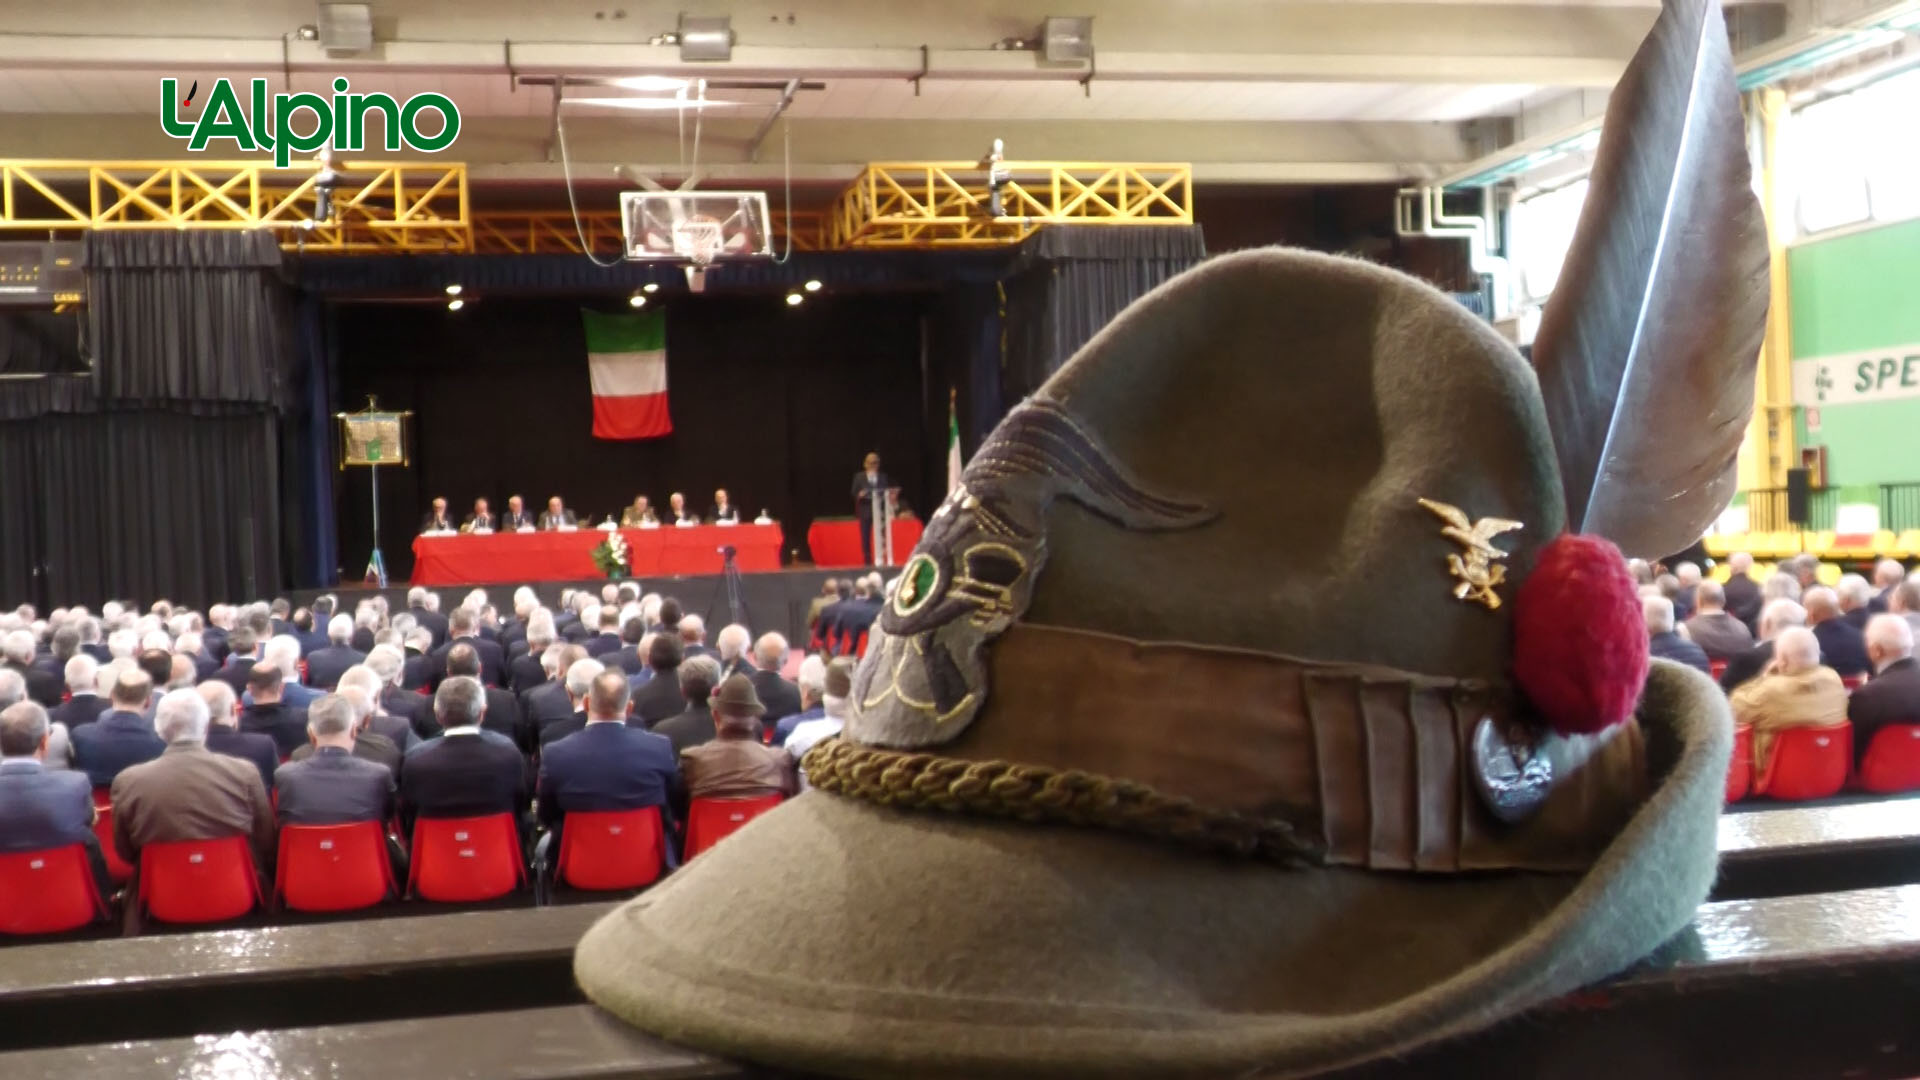 L'Alpino - A Cologno Monzese l'assemblea dei delegati